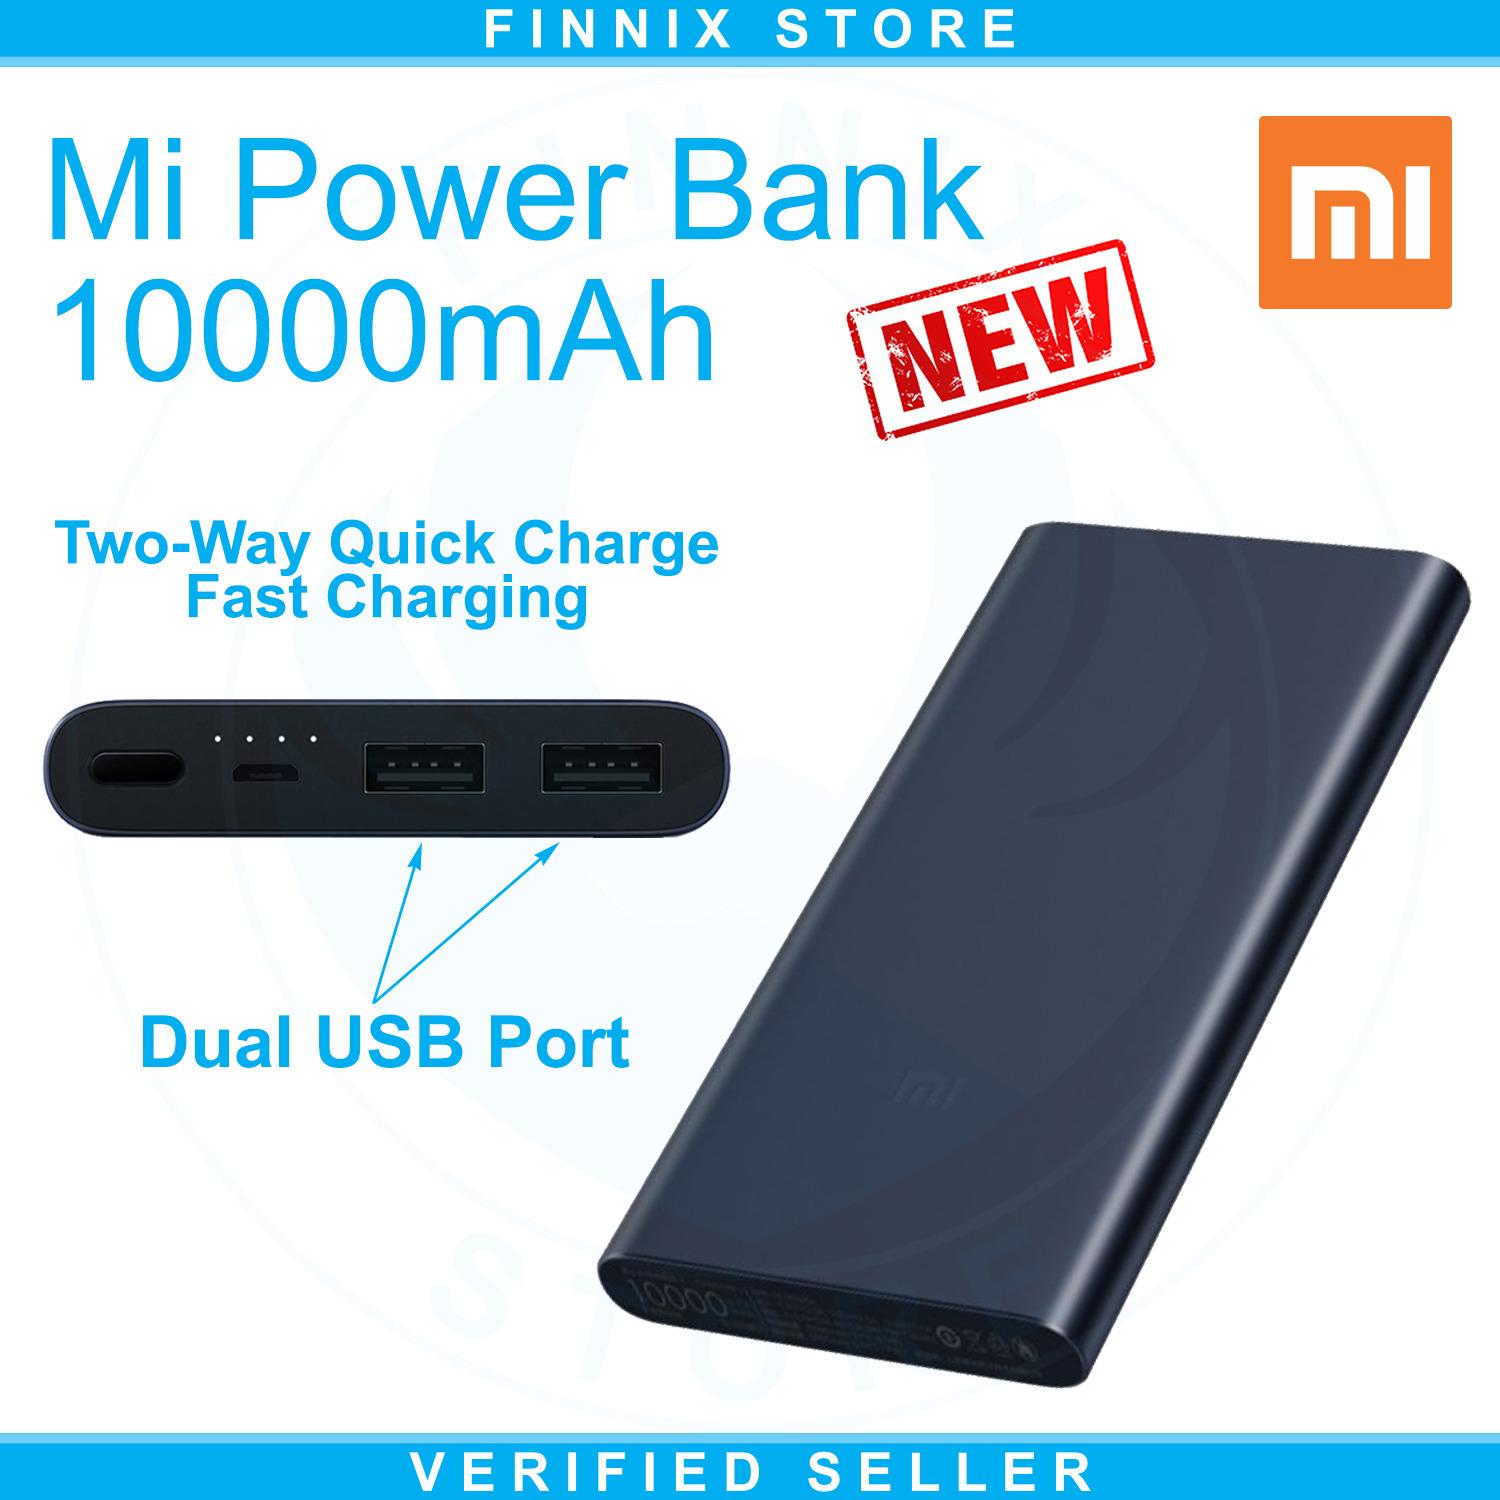 Xiaomi Mi Power Bank 10000mAh Dual USB Port Fast Charging (Powerbank 10000mAh Terbaru Xiaomi Dengan 2 USB Port)